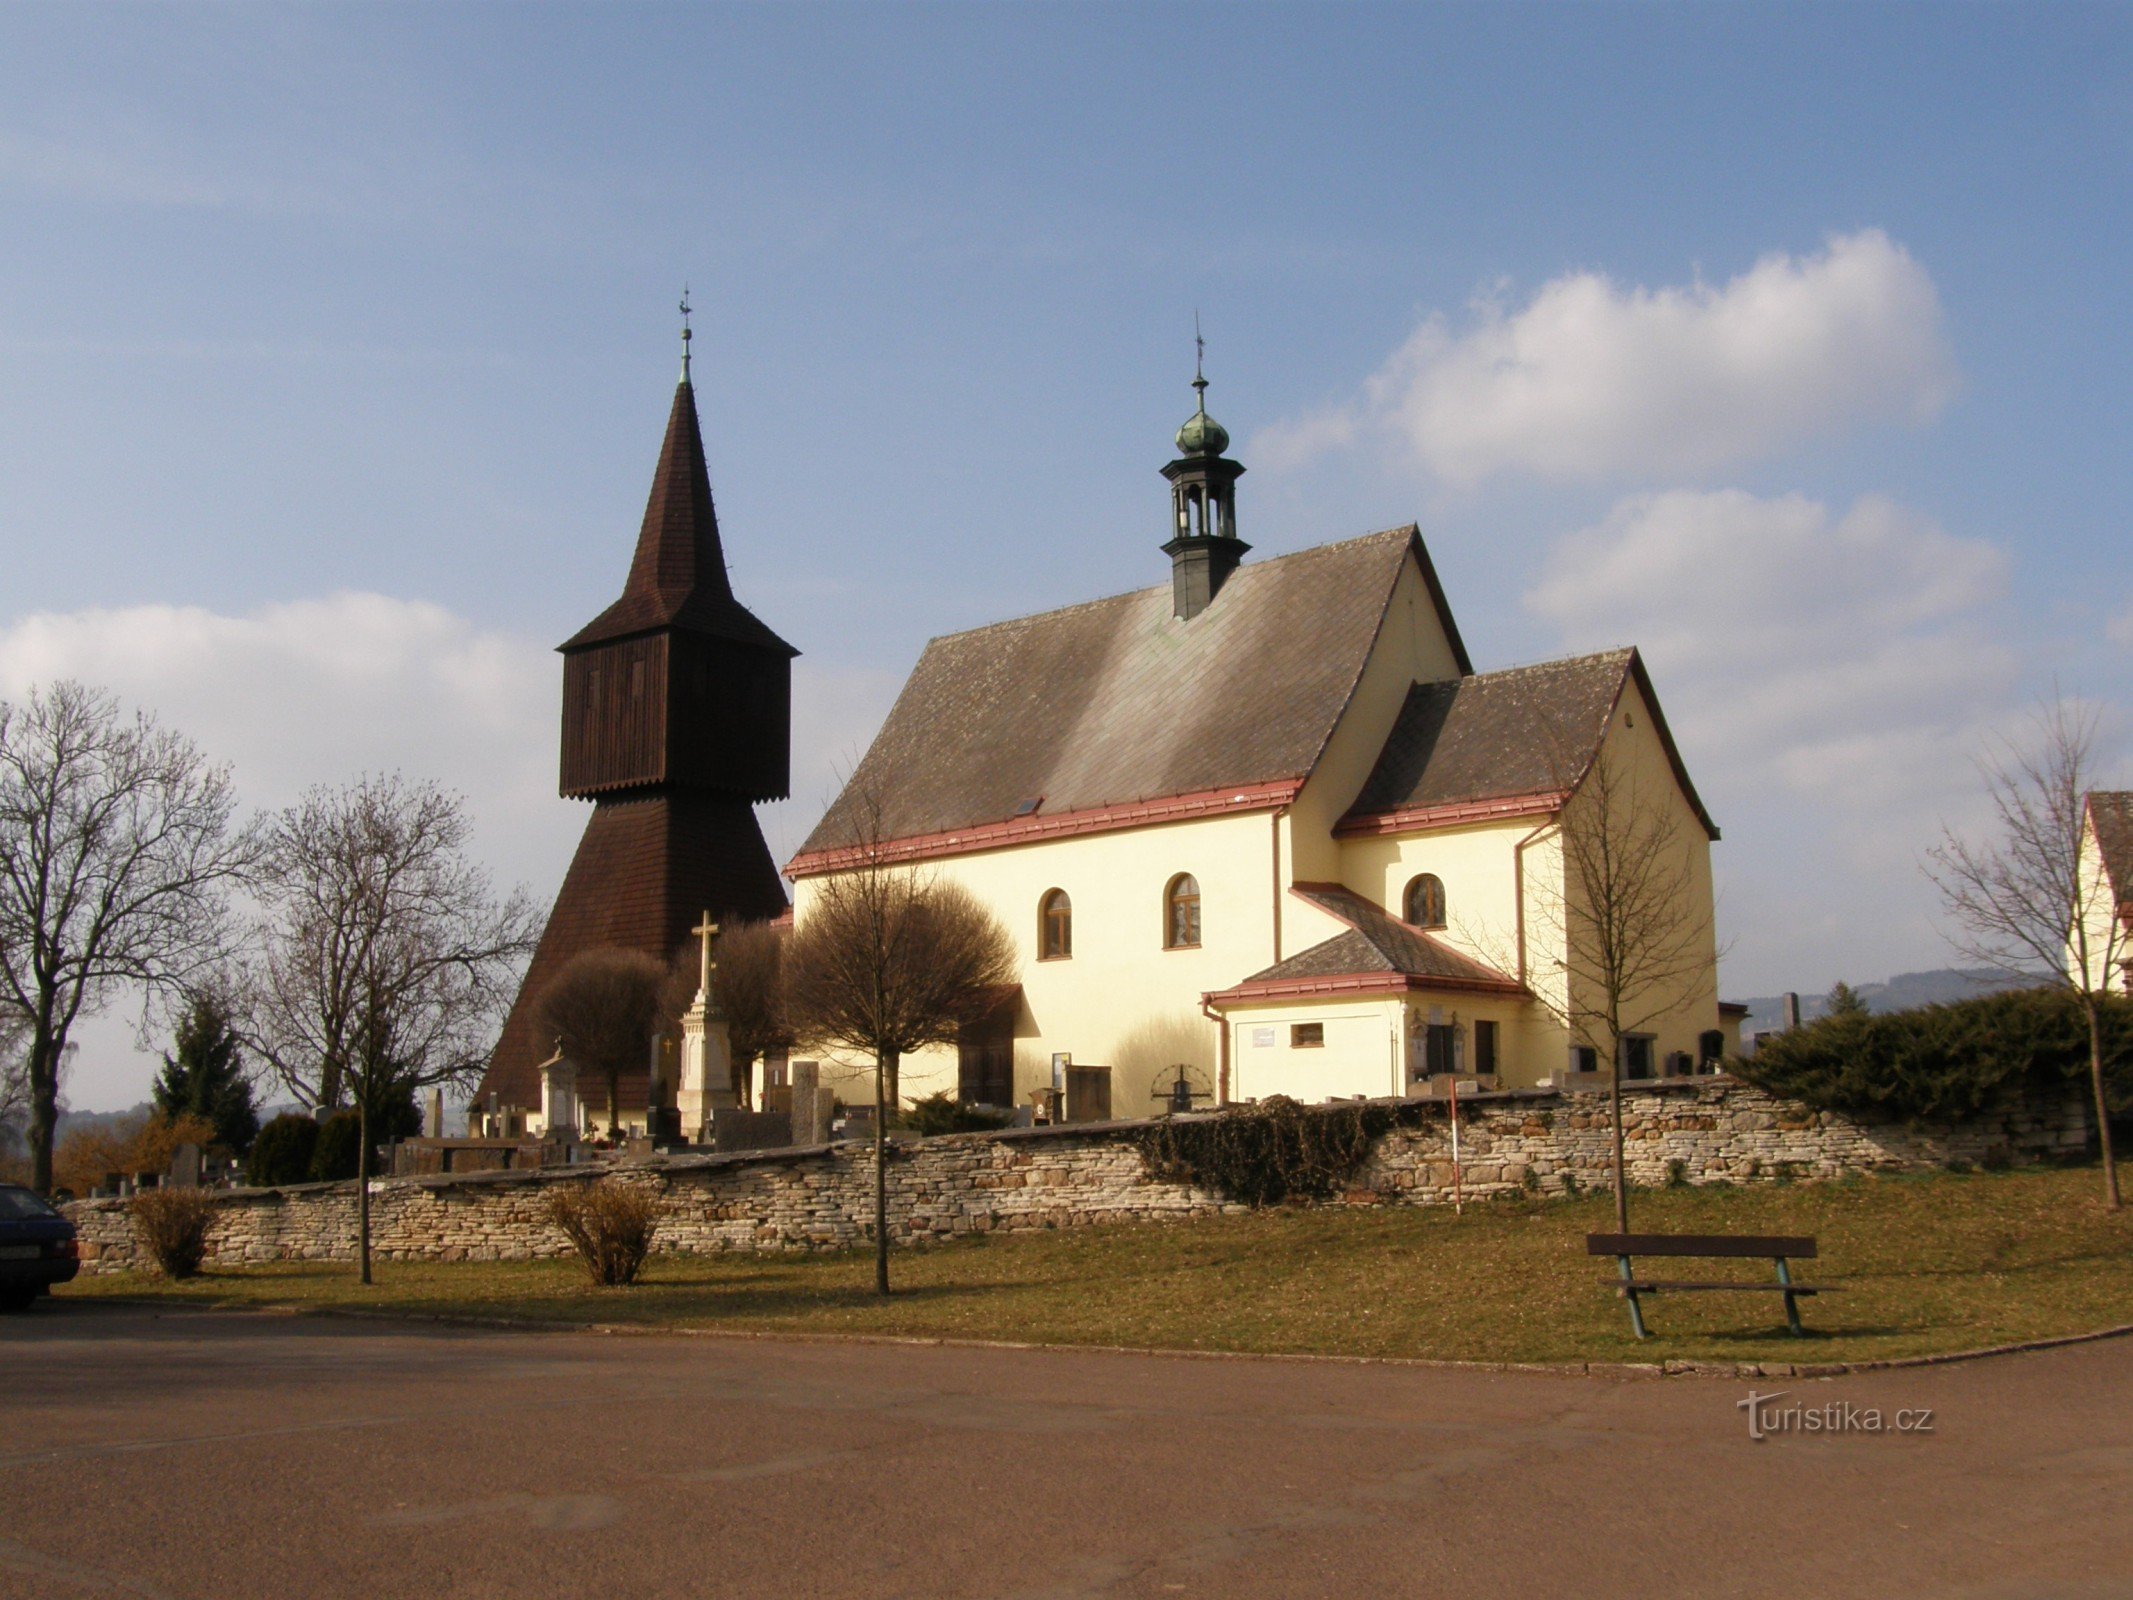 Rtyně ở Podkrkonoší - nhà thờ và tháp chuông